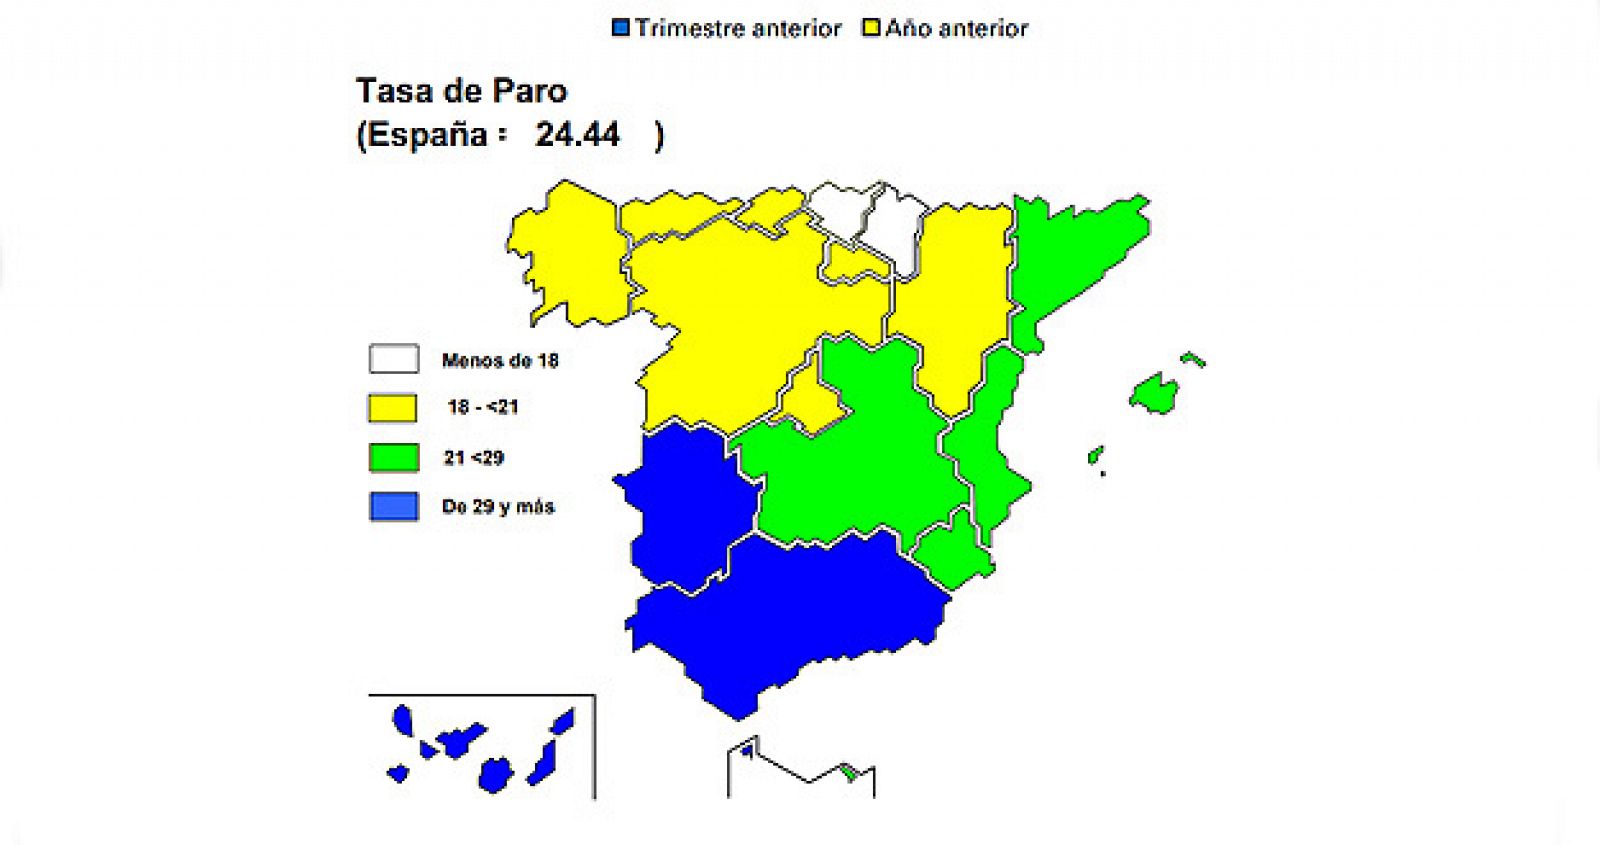 La tasa de paro más baja es la de País Vasco y la más alta, la de Andalucía